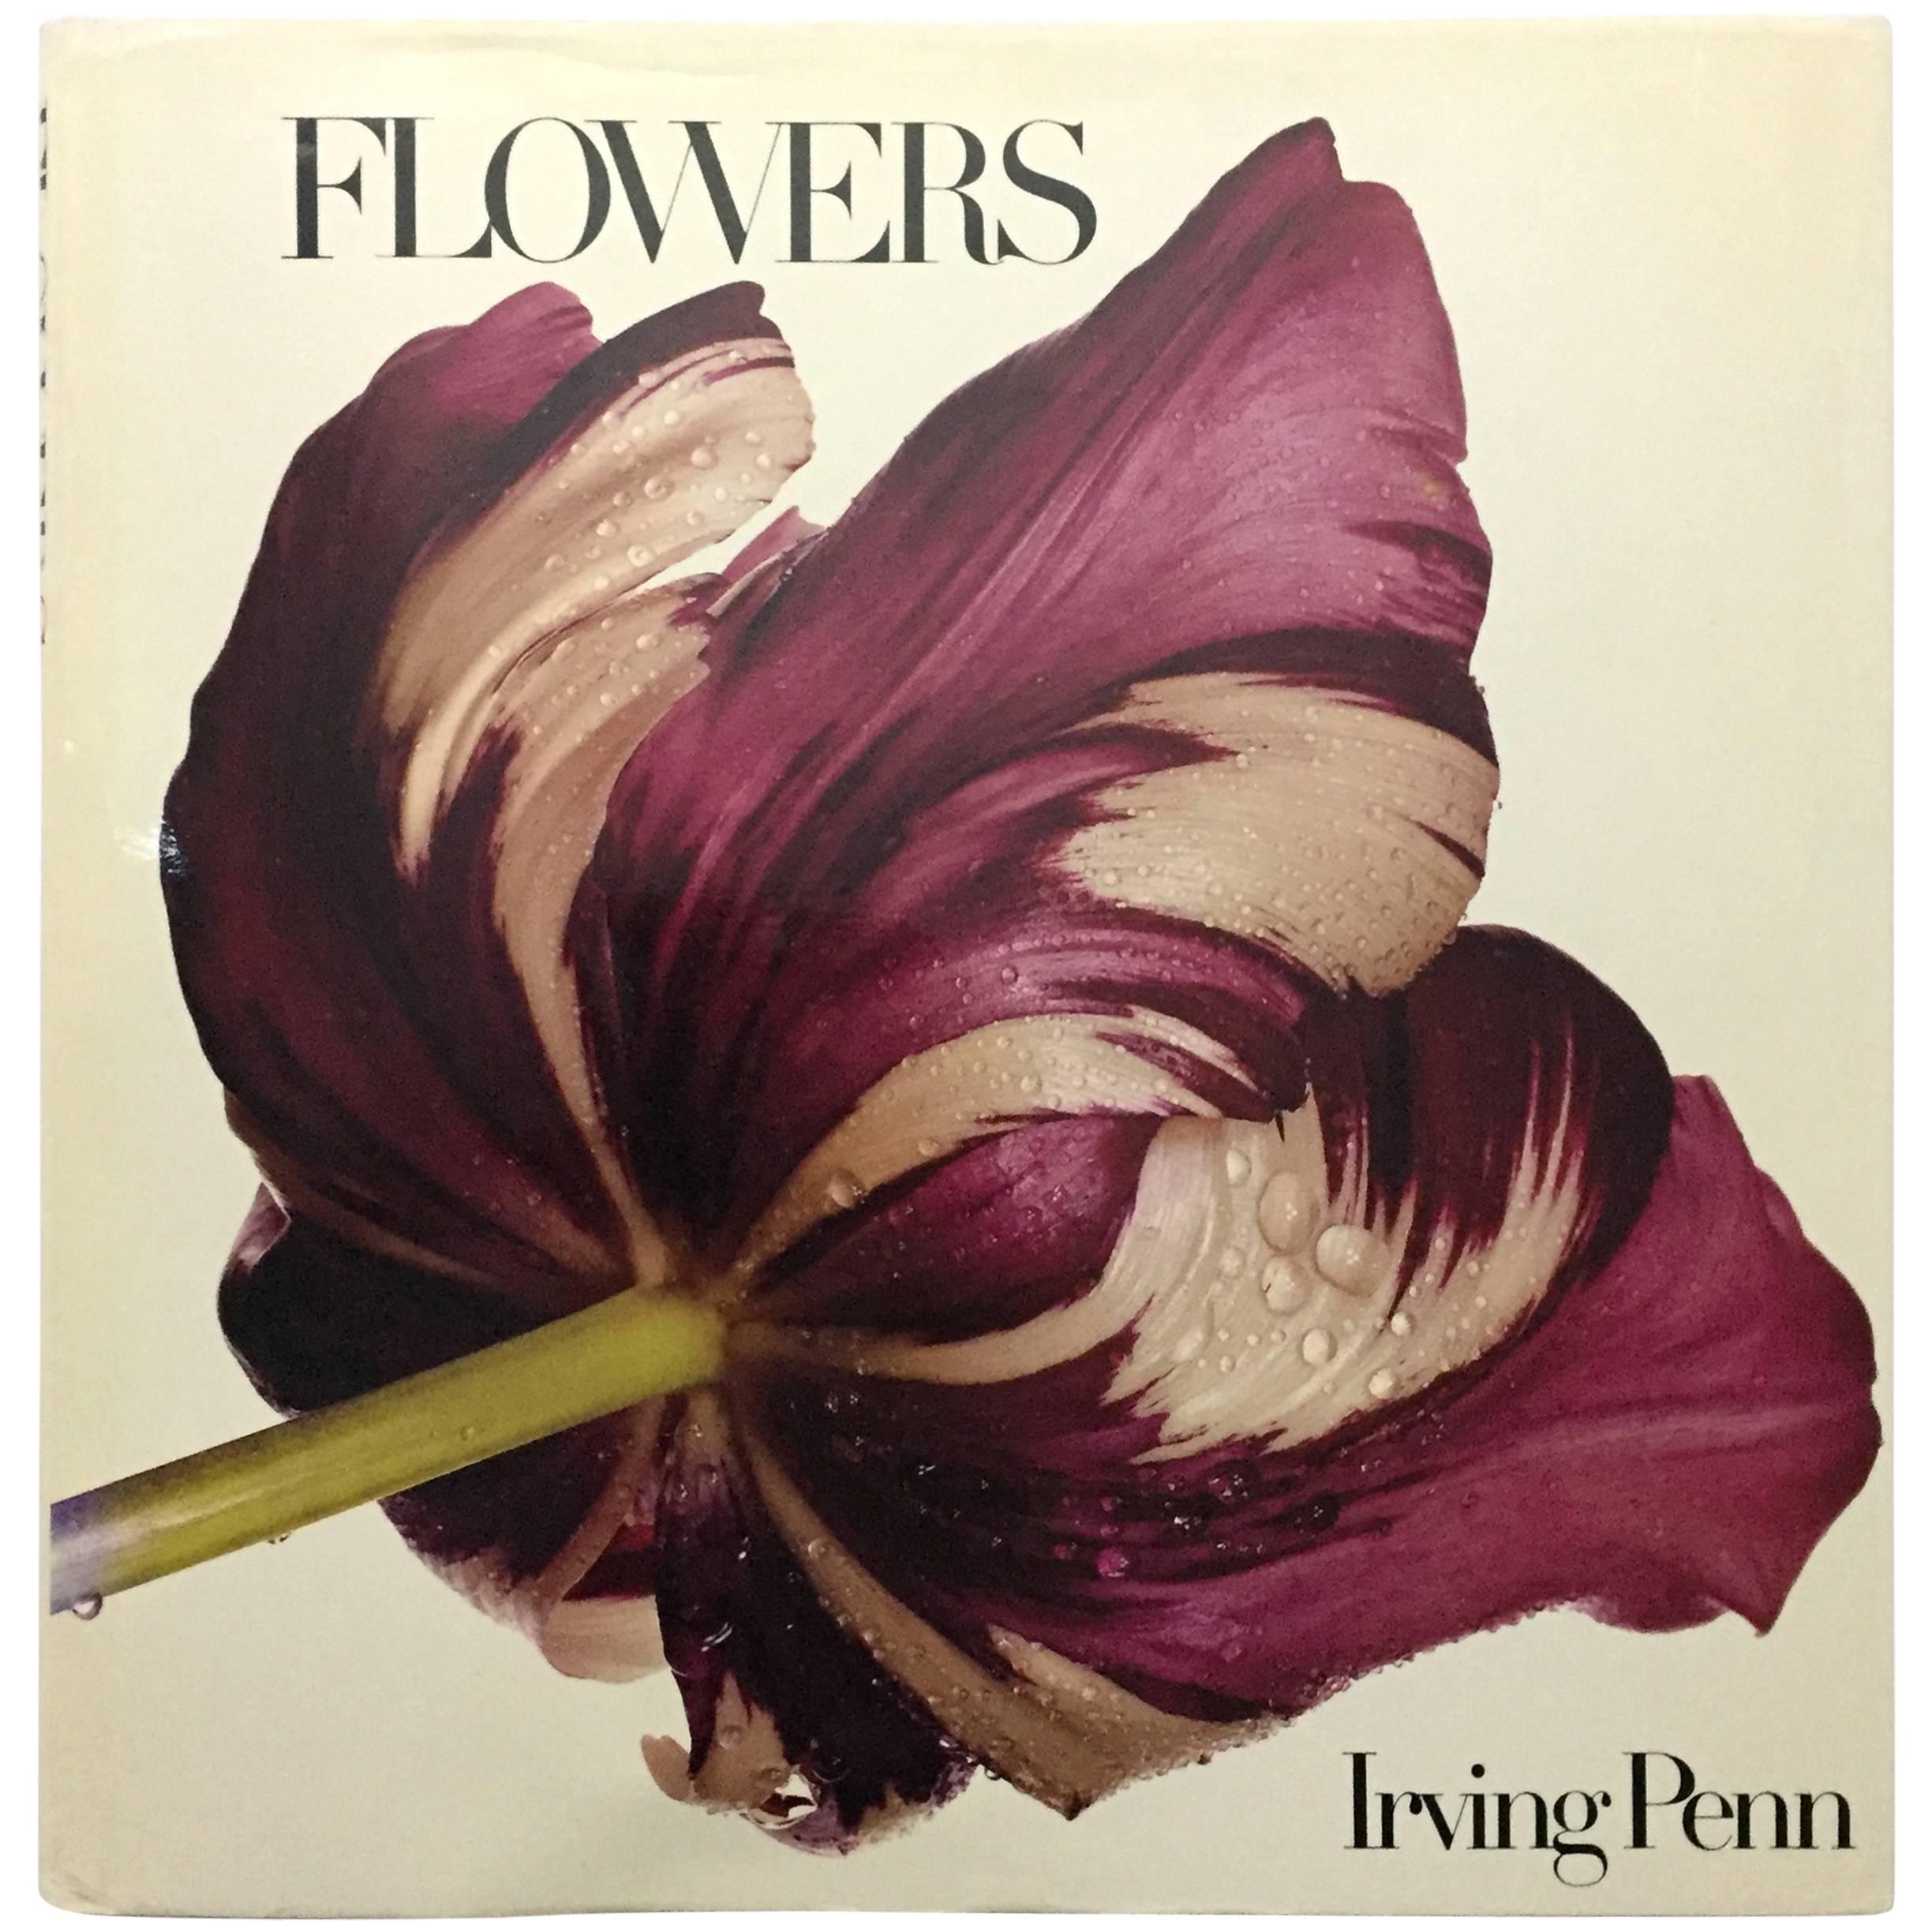 "Irving Penn Flowers" Book - 1980